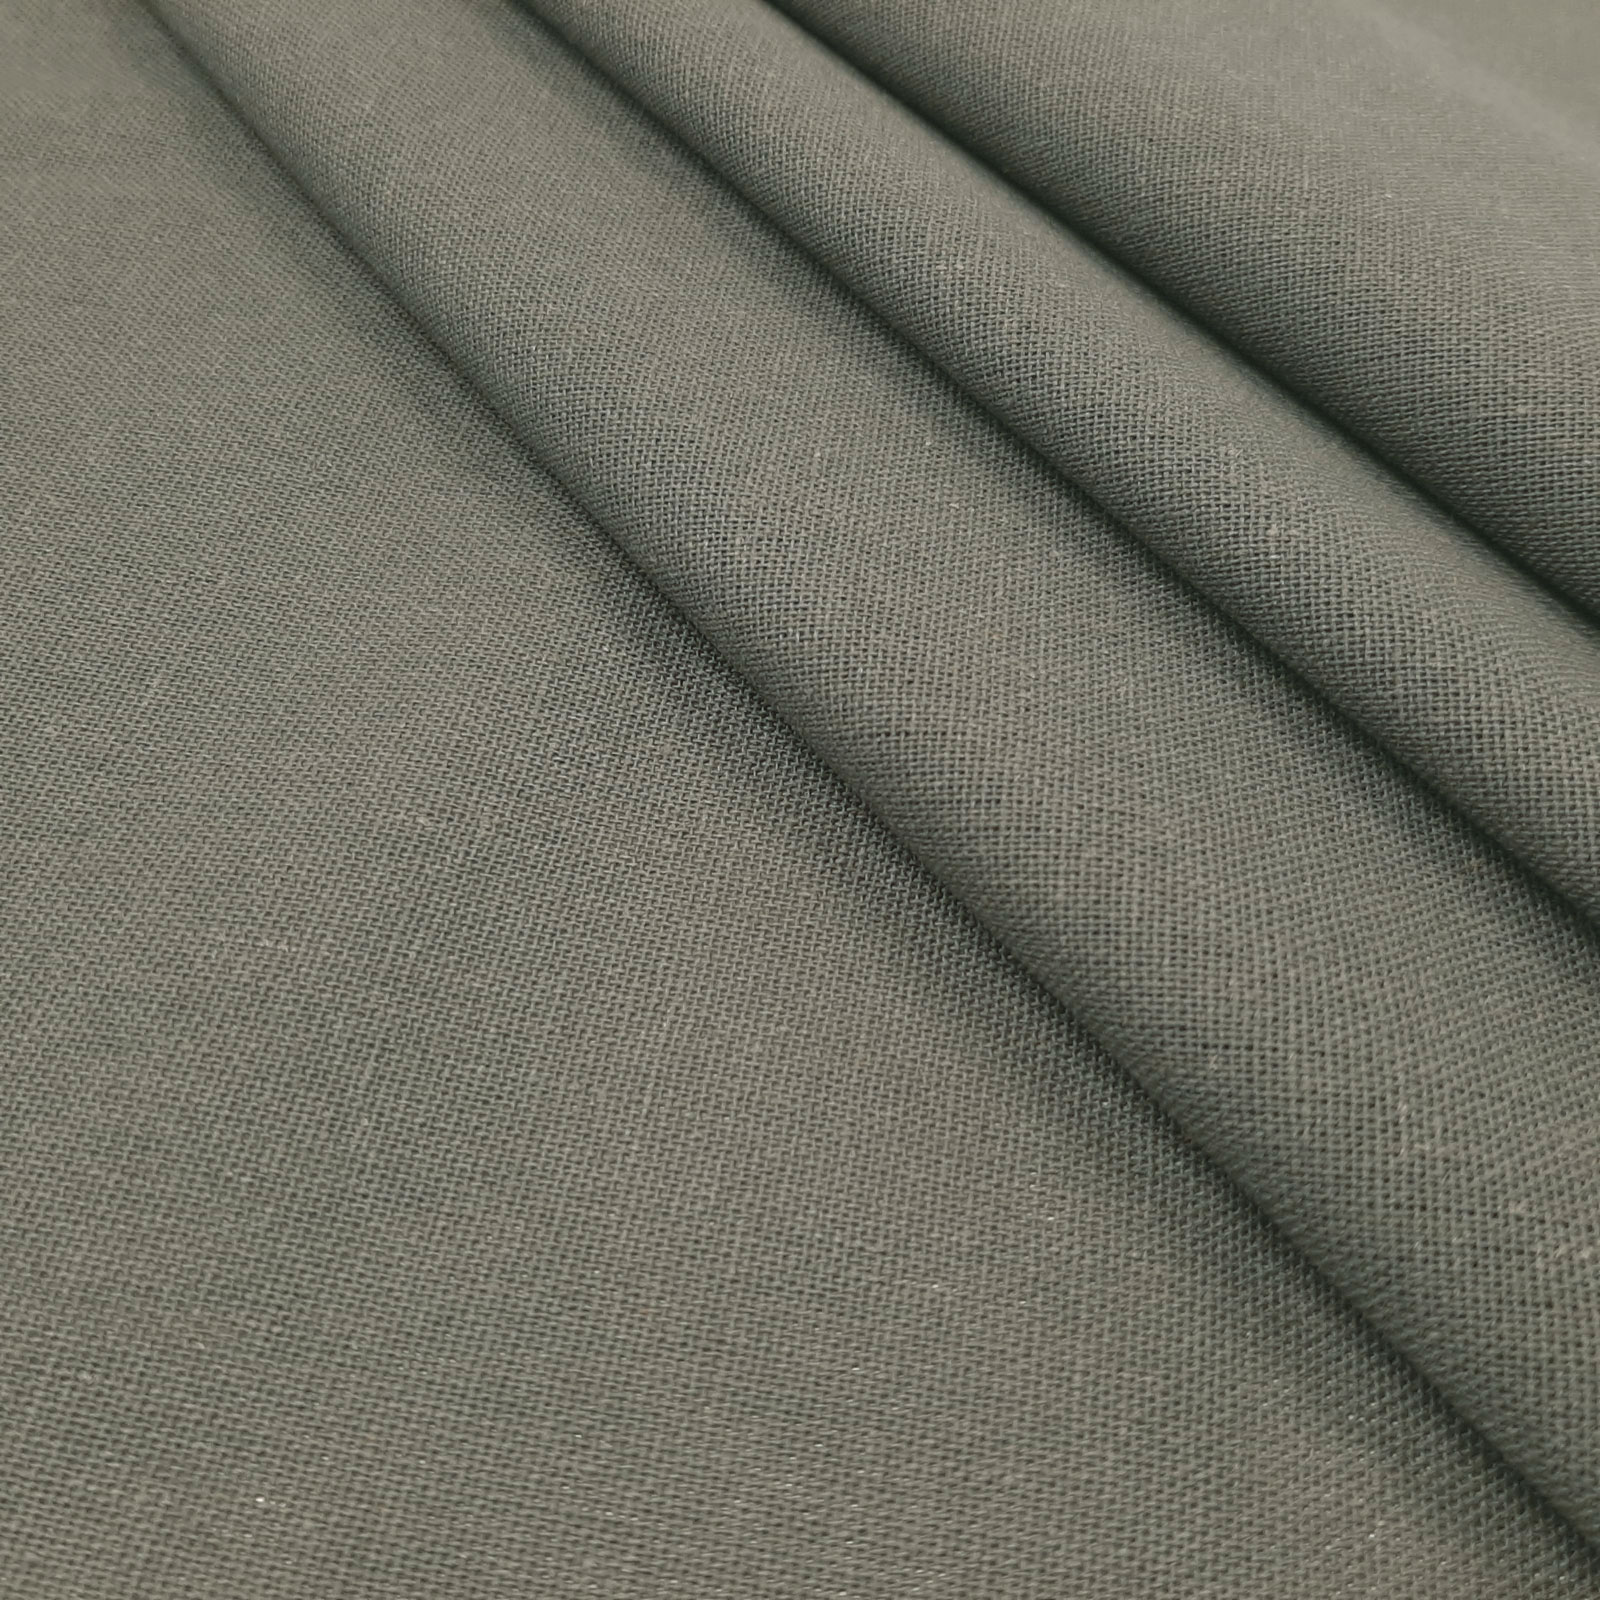 Bella - naturligt linned-bomuldsstof - Mørkegrå